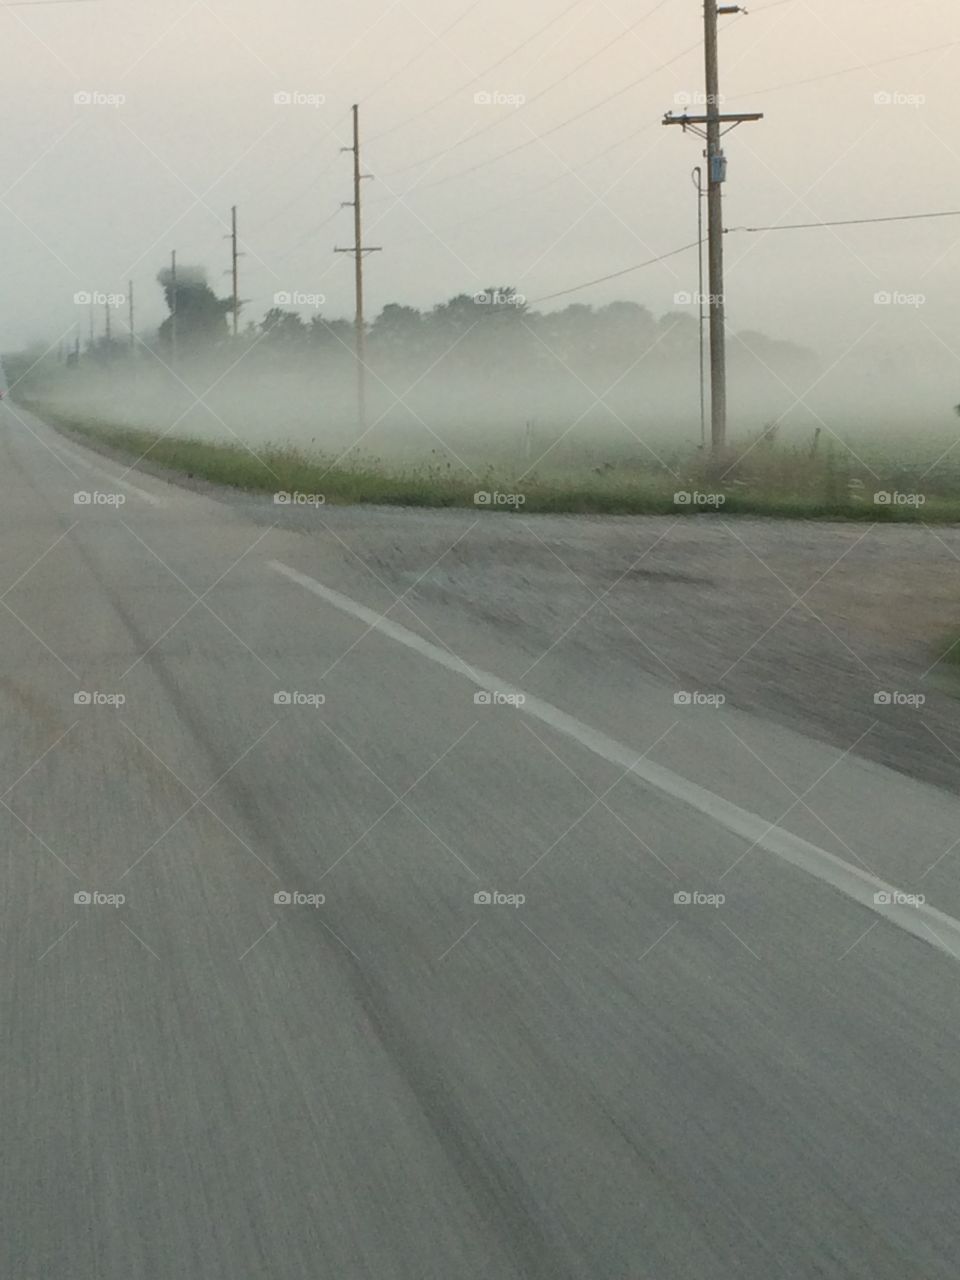 Rolling fog